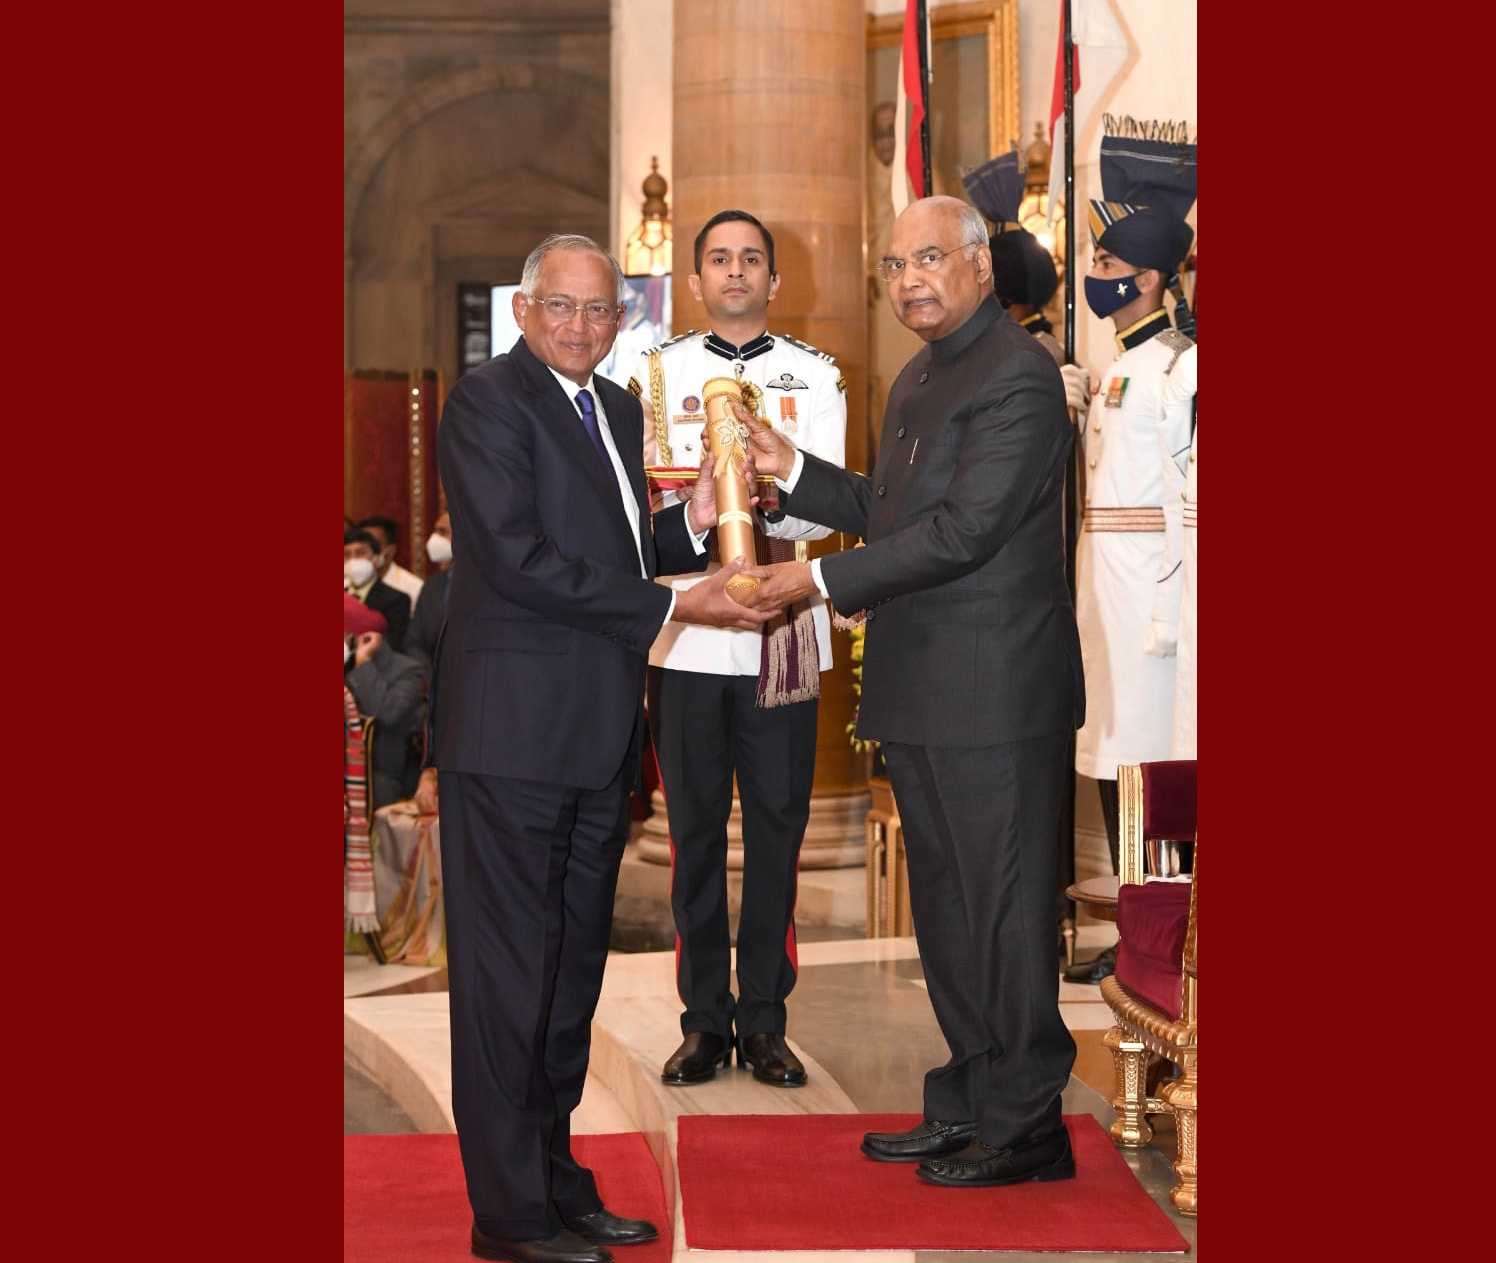 टीव्हीएस मोटर कंपनीचे अध्यक्ष  वेणू श्रीनिवासन व्यापार आणि उद्योग क्षेत्रातील त्यांच्या योगदानाबद्दल पद्म भूषण पुरस्काराने सन्मानित